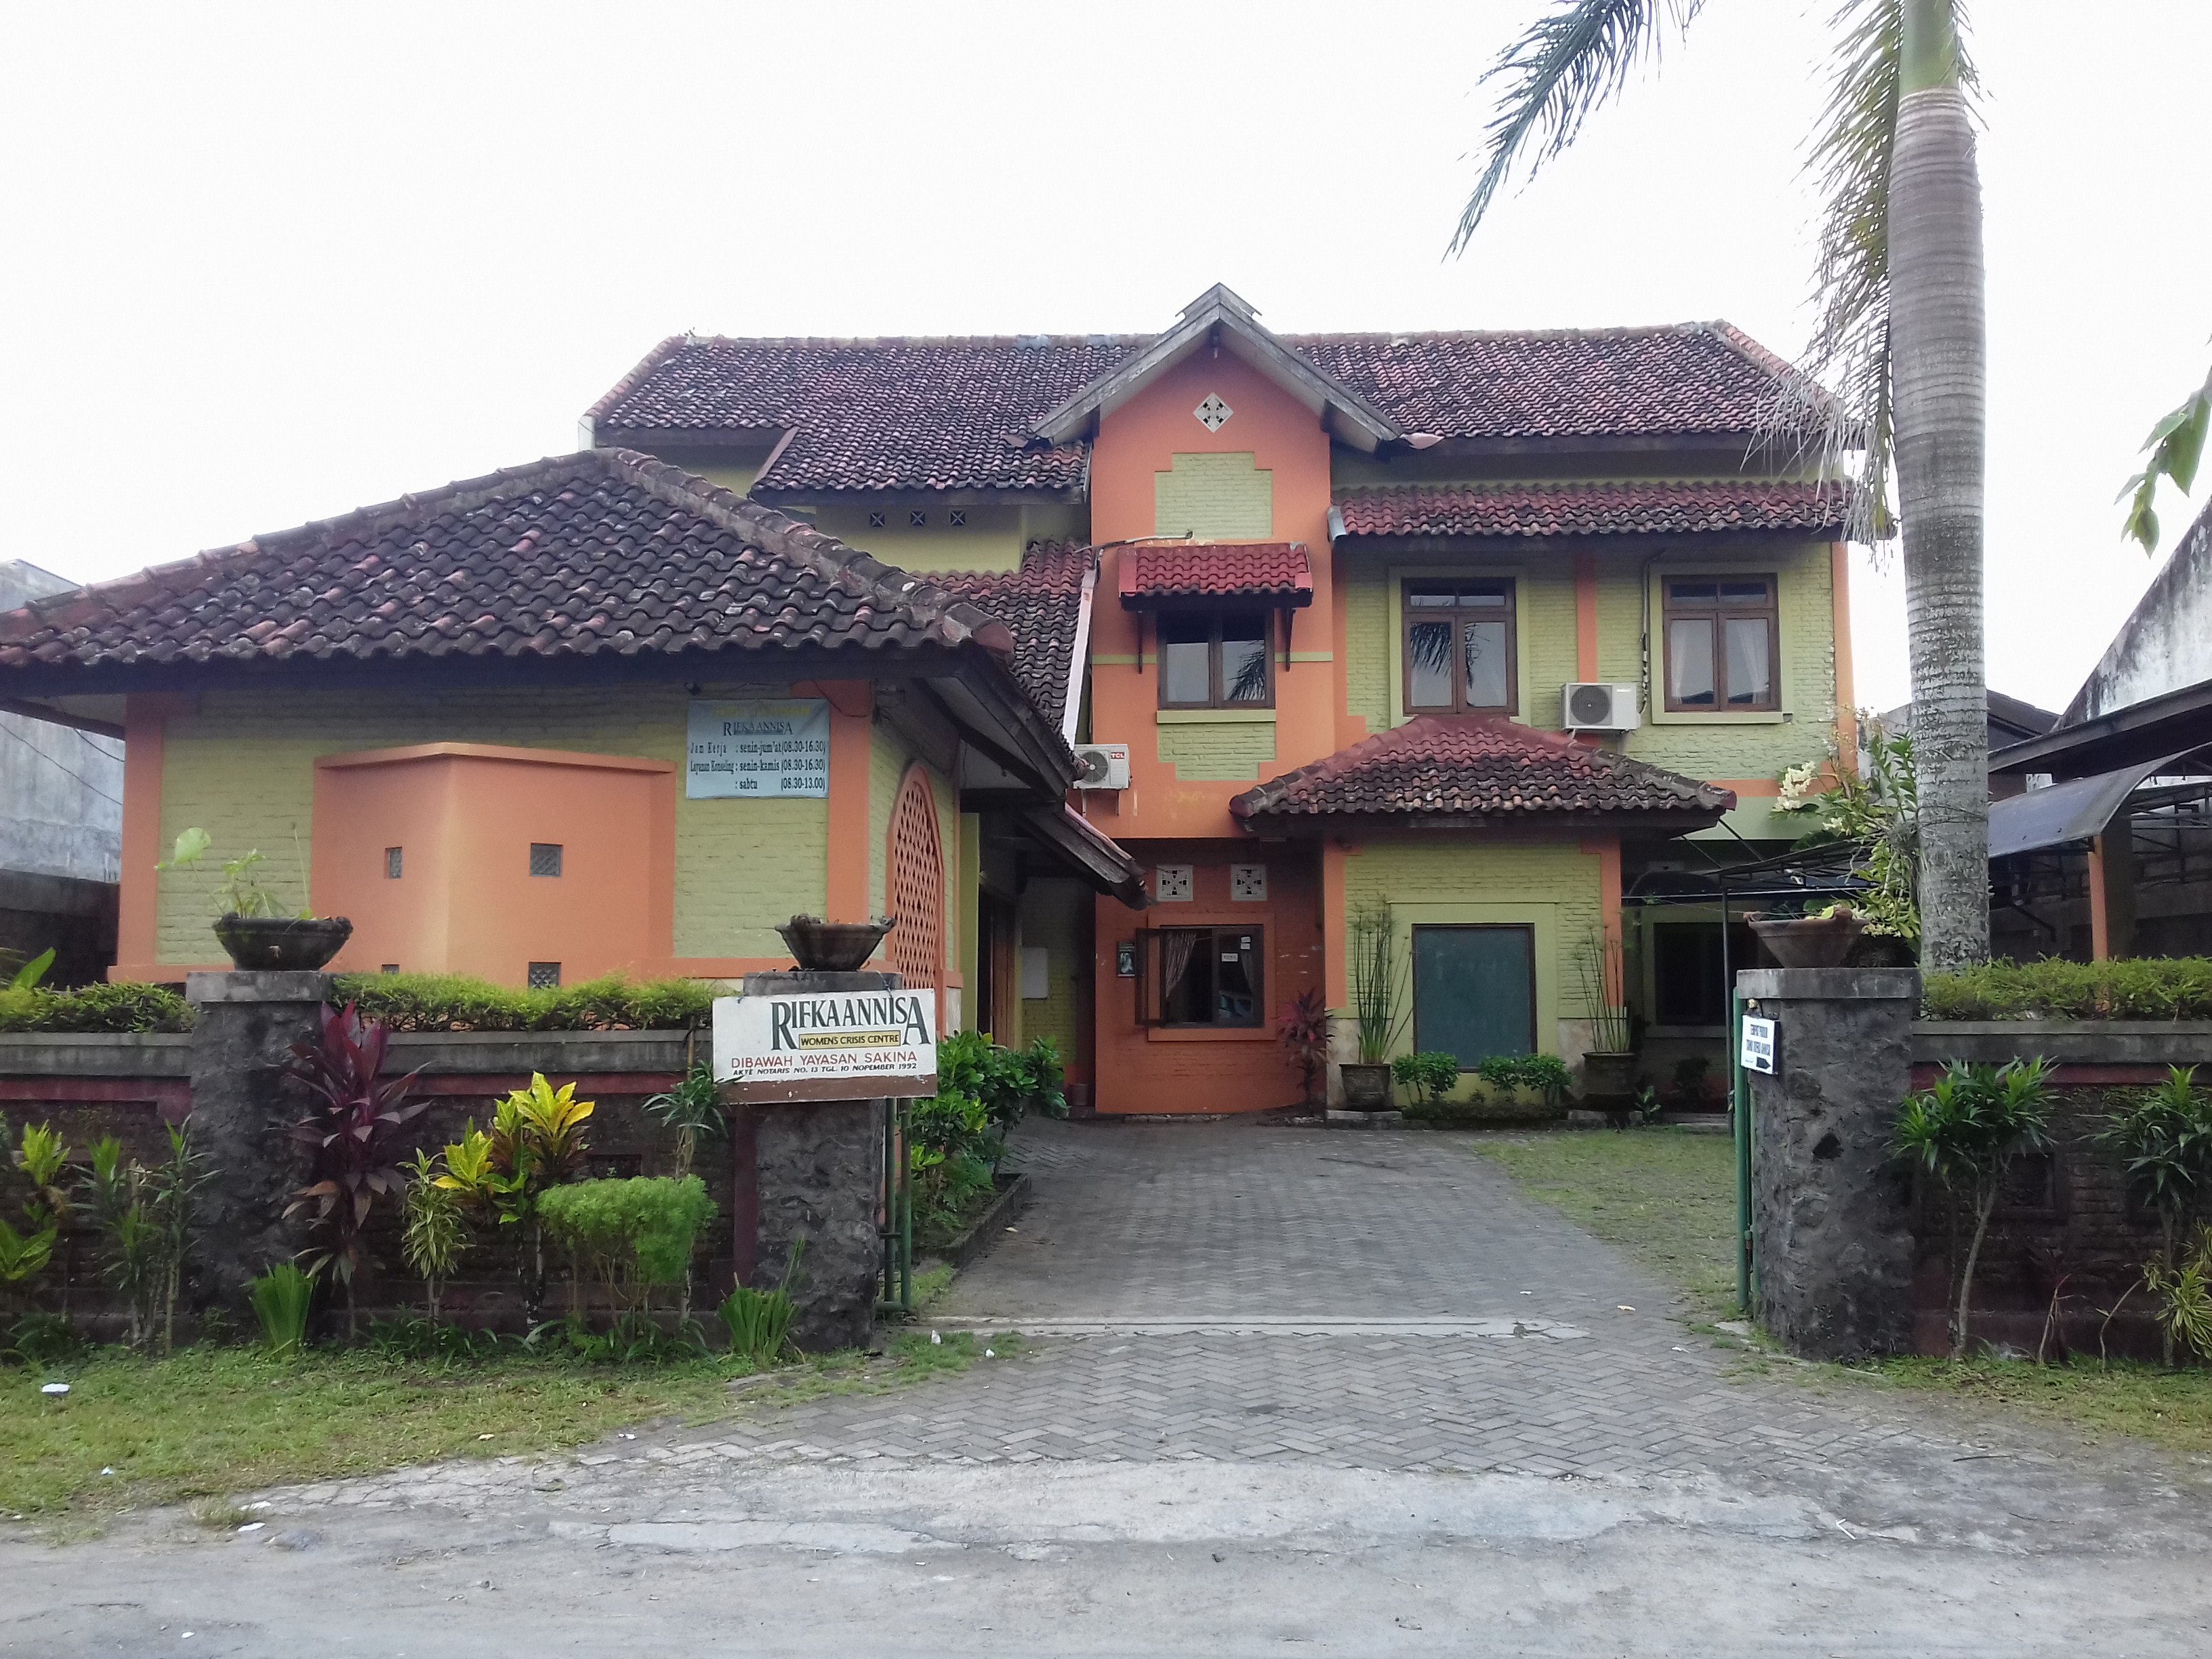 Kantor pusat Rifka Annisa WCC yang terletak di Jl. Jambon 4 No. 69A, Kricak, Tegalrejo. Kantor yang berbentuk rumah ini bertujuan untuk menimbulkan kenyamanan baik bagi karyawan maupun klien.